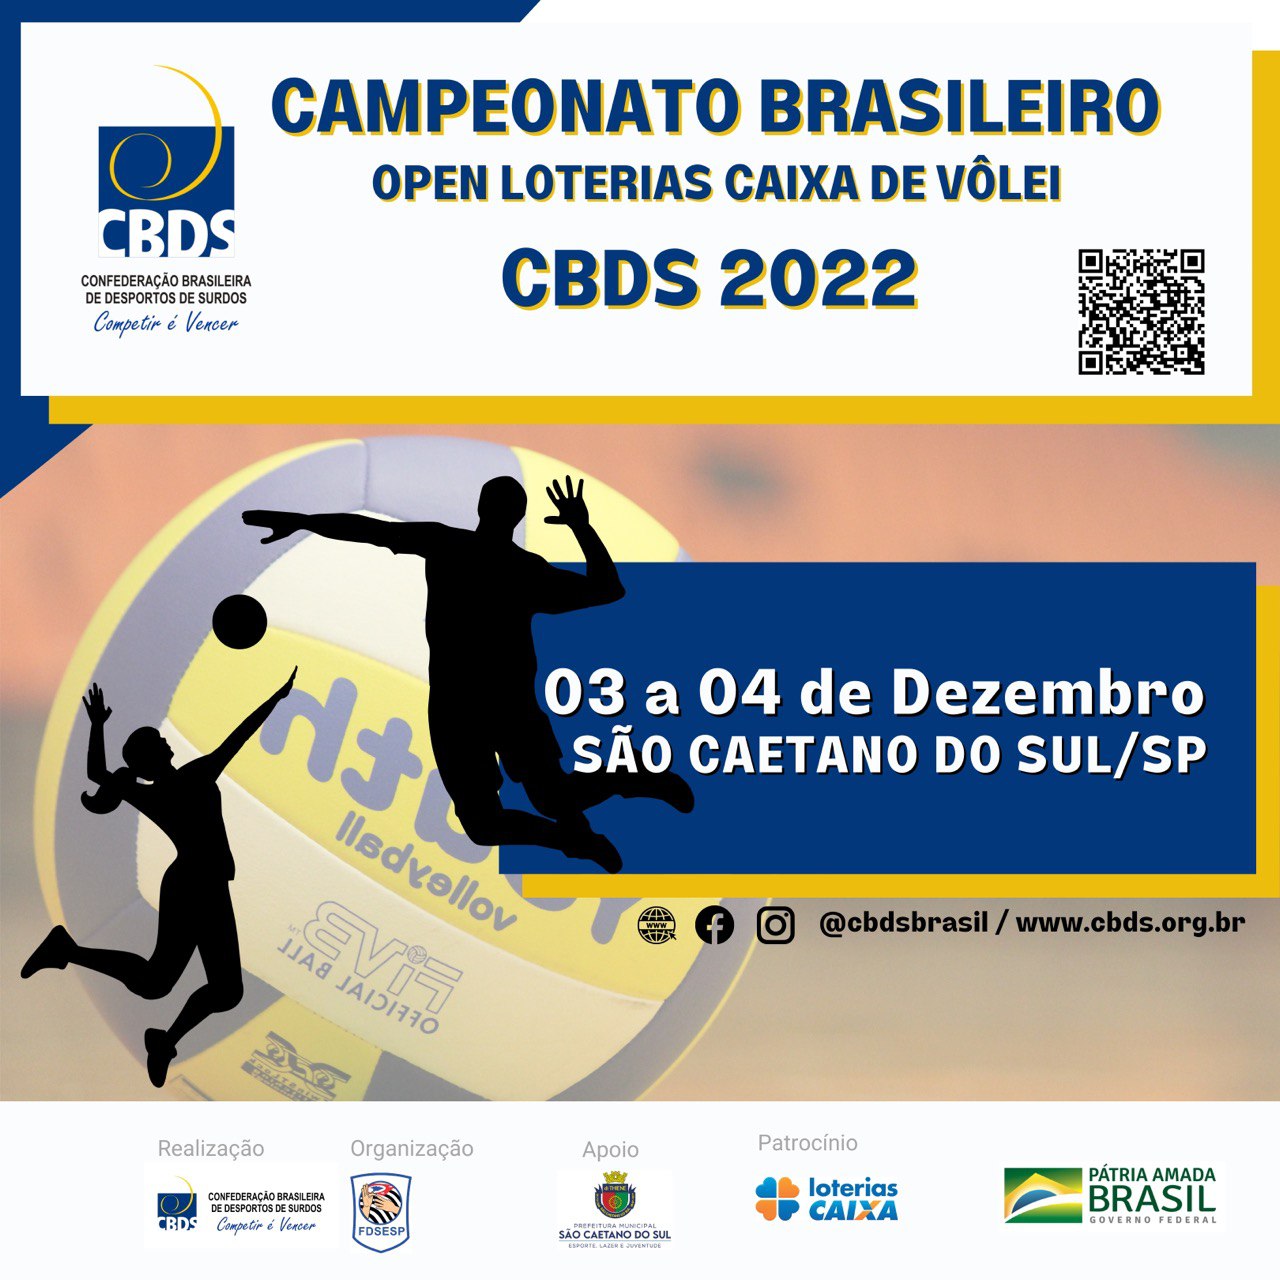 Campeonato Brasileiro Open Loterias Caixa de Vôlei Cbds 2022